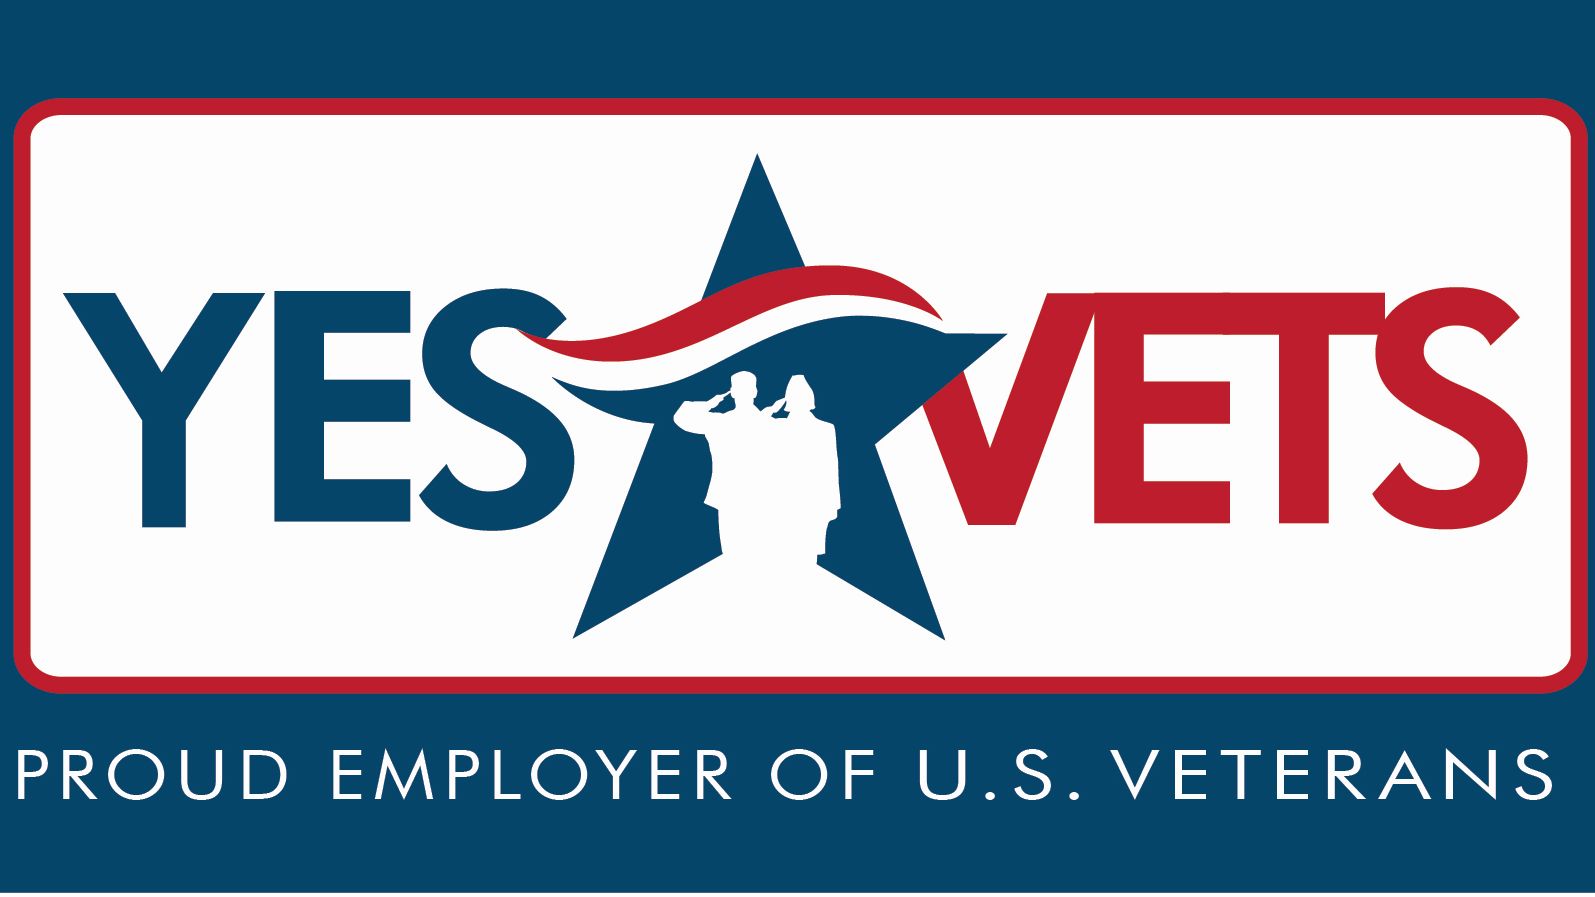 Yesvets Logo